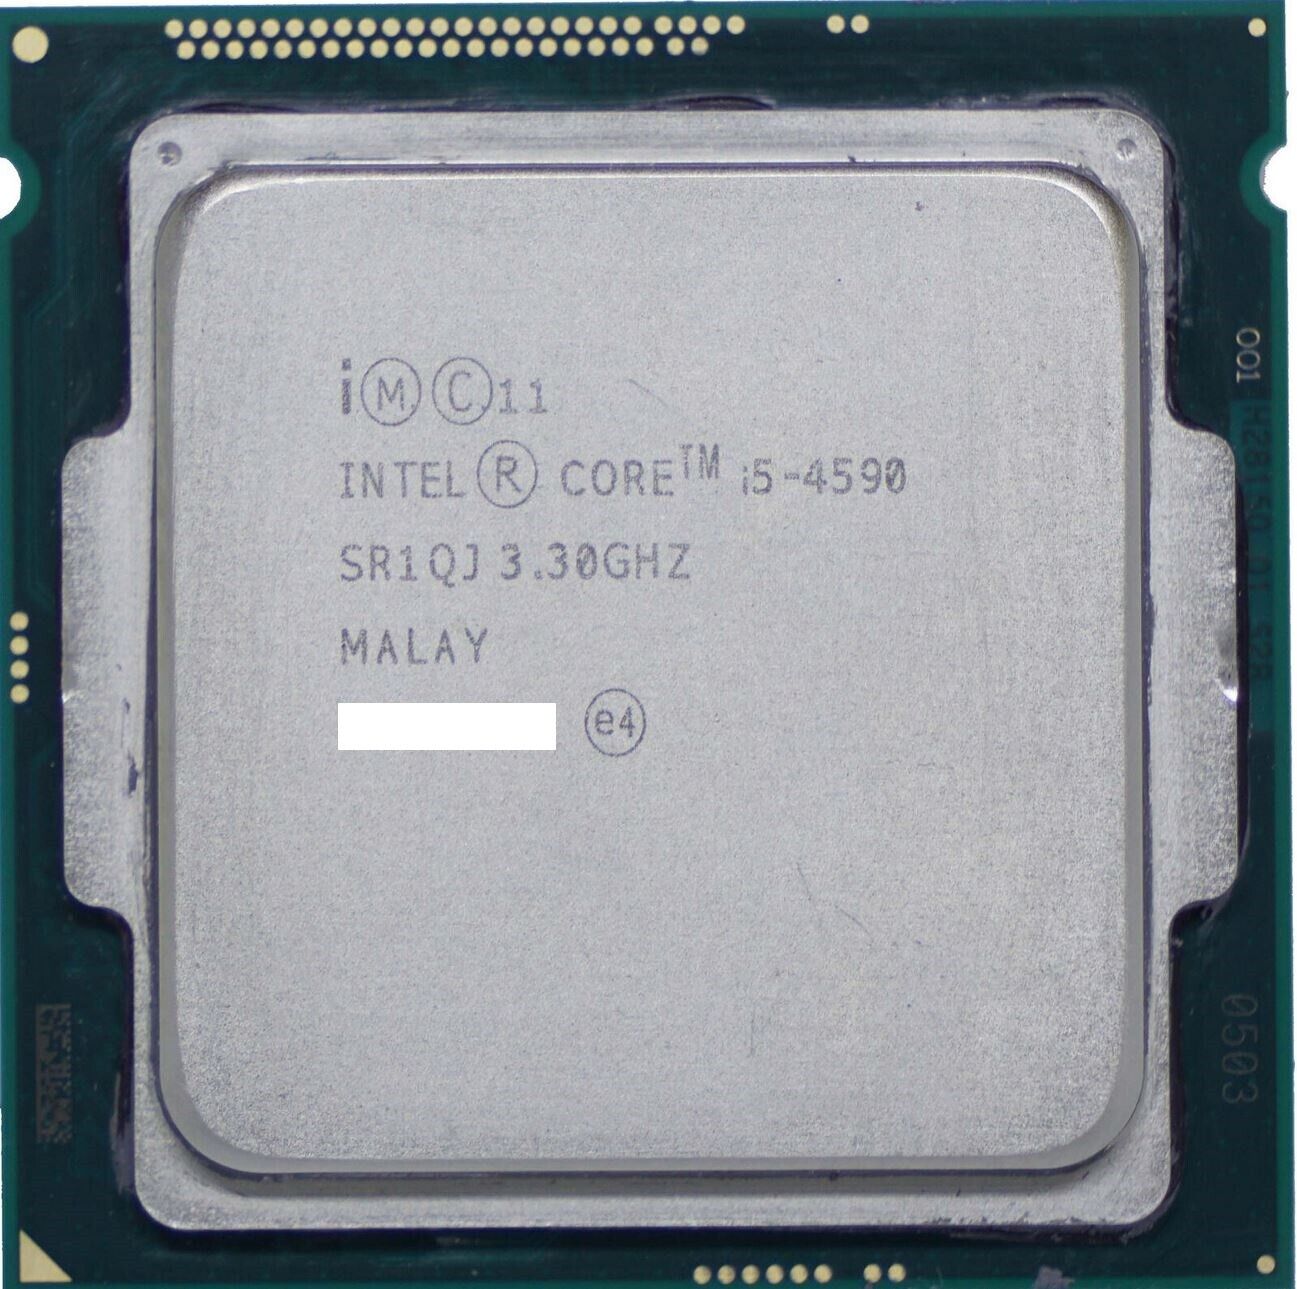 INTEL CORE I5-4590 QUAD-CORE 3.30GHZ 6MB LGA1150 CPU DESKTOP PROCESSOR SR1QJ